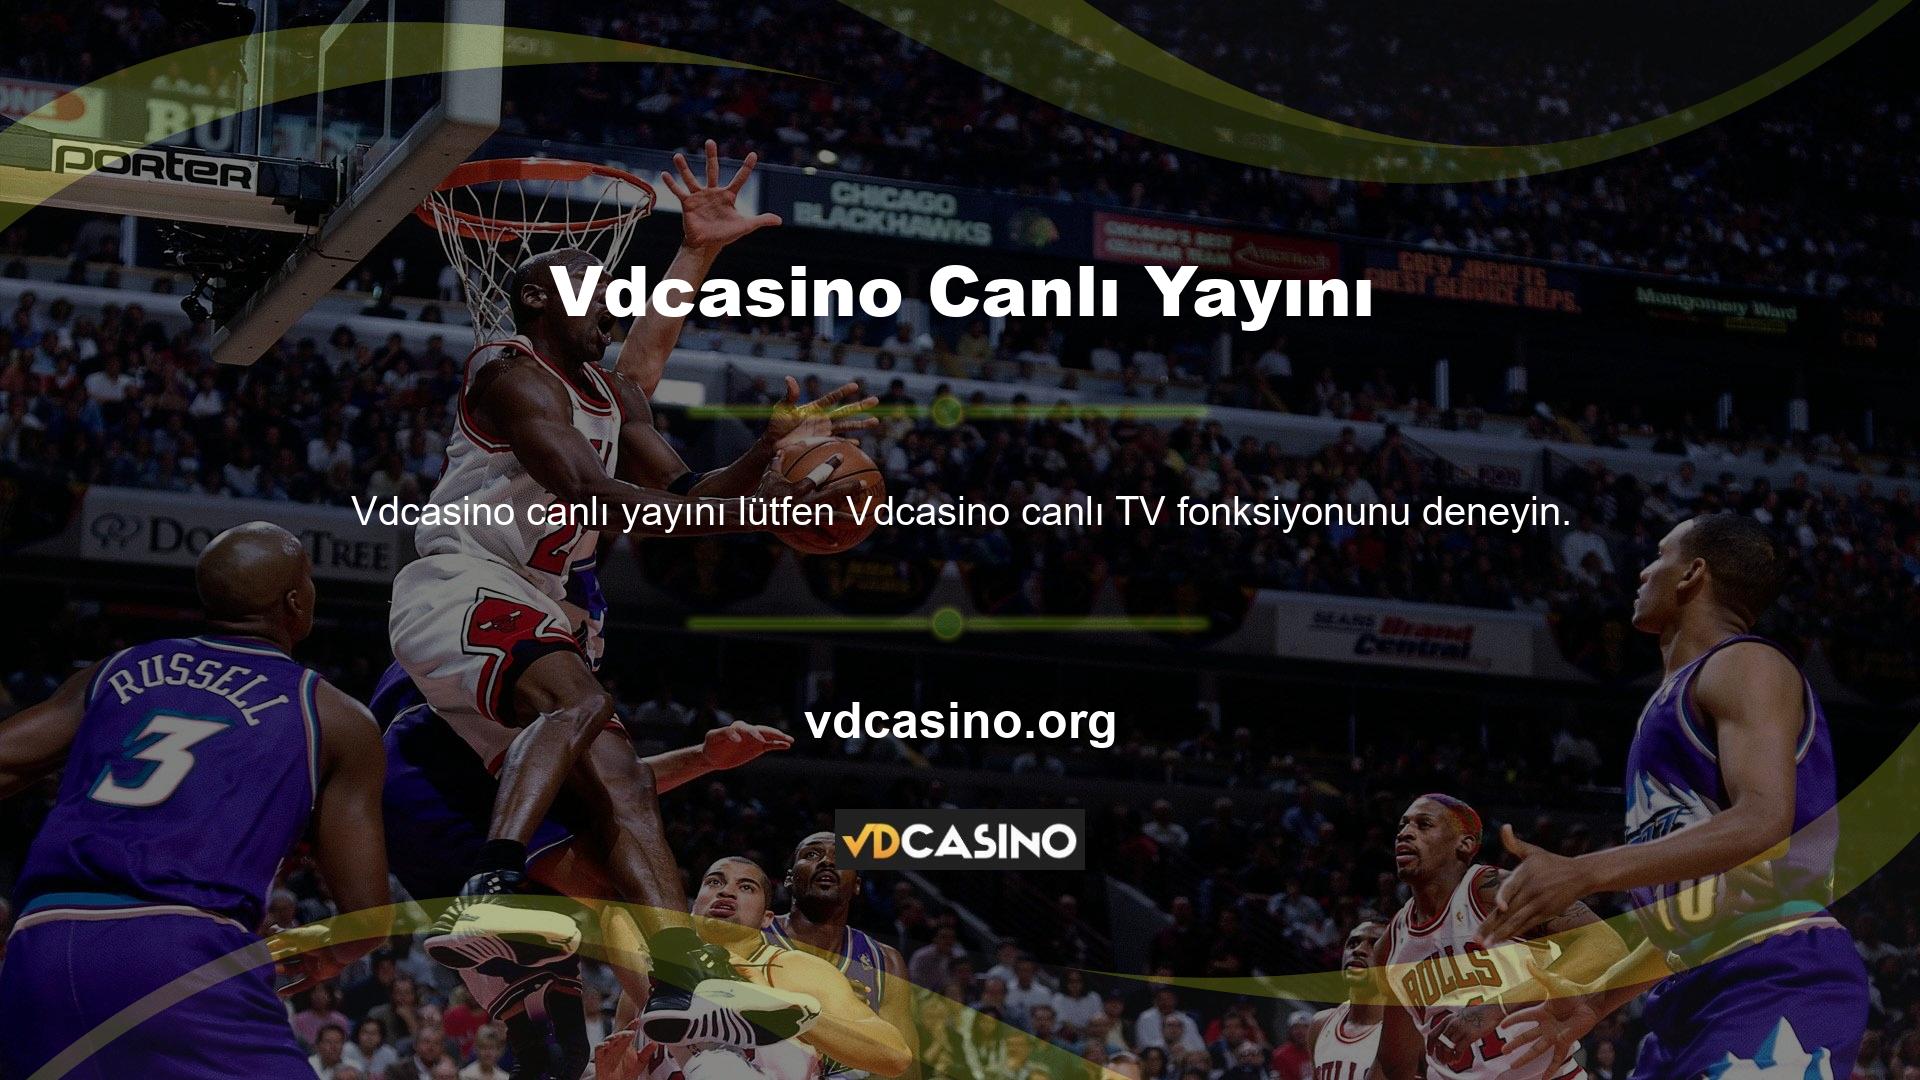 Sporseverler Vdcasino TV'nin canlı maç yayını imkânlarından yararlanabiliyor